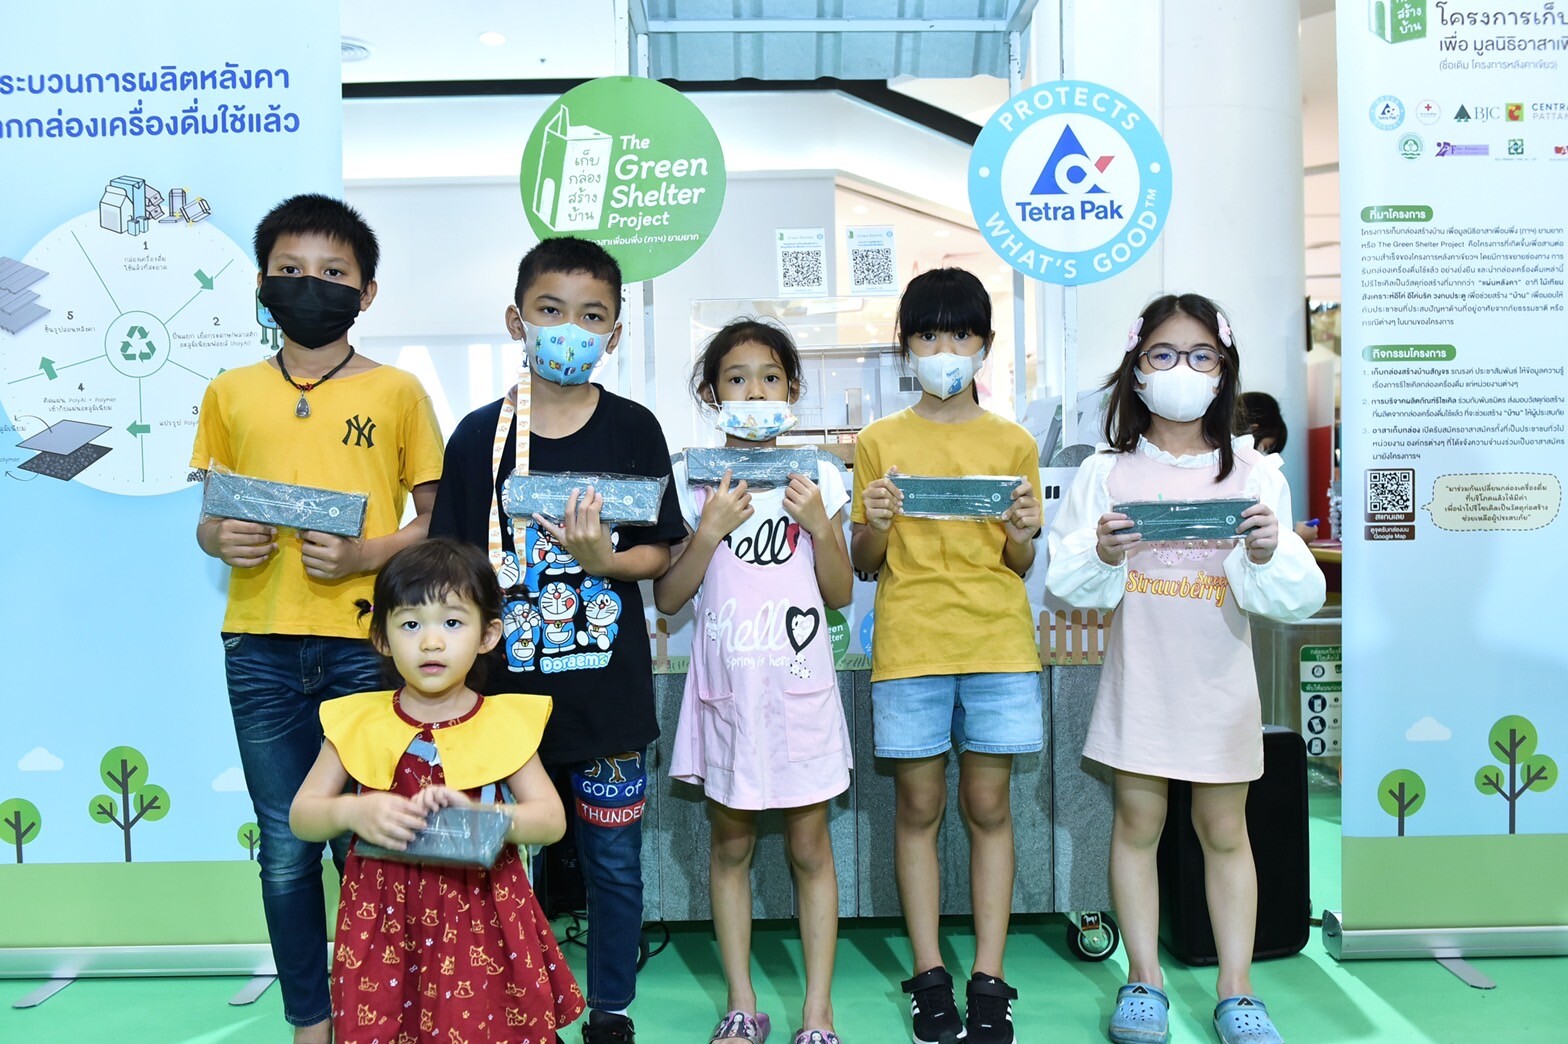 เต็ดตรา แพ้ค ร่วมงาน "Central Kids Day 2023" ภายใต้คอนเซปต์ "ECO CREATIVE CAMP" ปลูกจิตสำนึกรักษ์สิ่งแวดล้อมแก่เยาวชนไทย